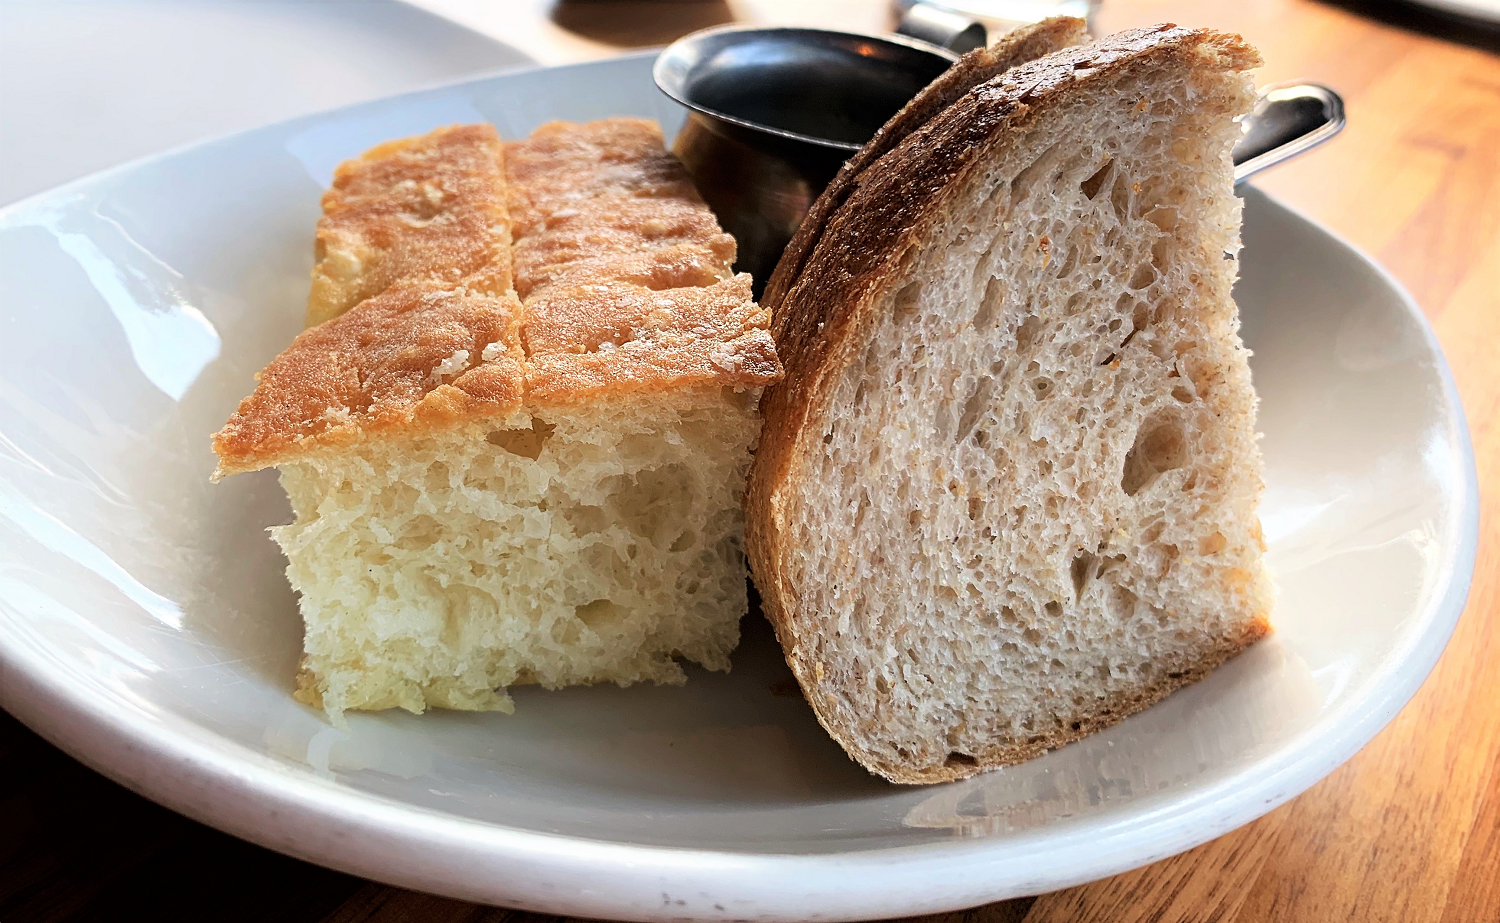 a plate with lighter focaccia bread and darker sourdough bread